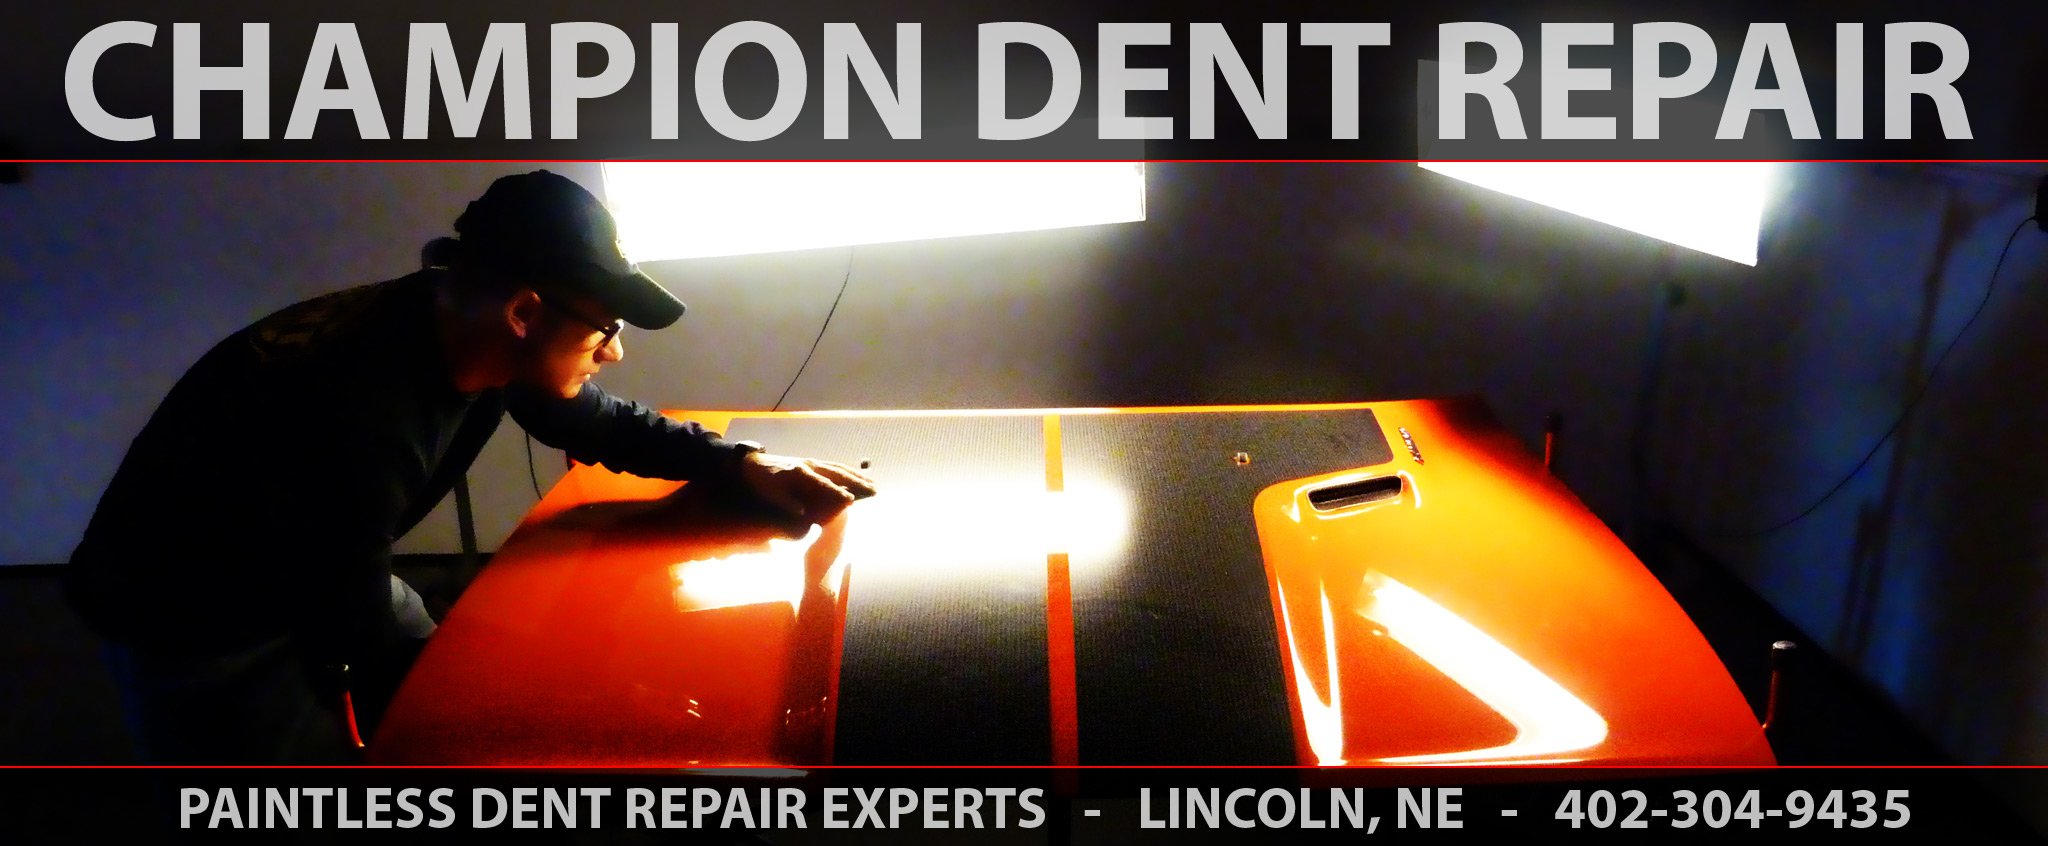 Champion Dent Repair - Paintless Dent Repair Experts